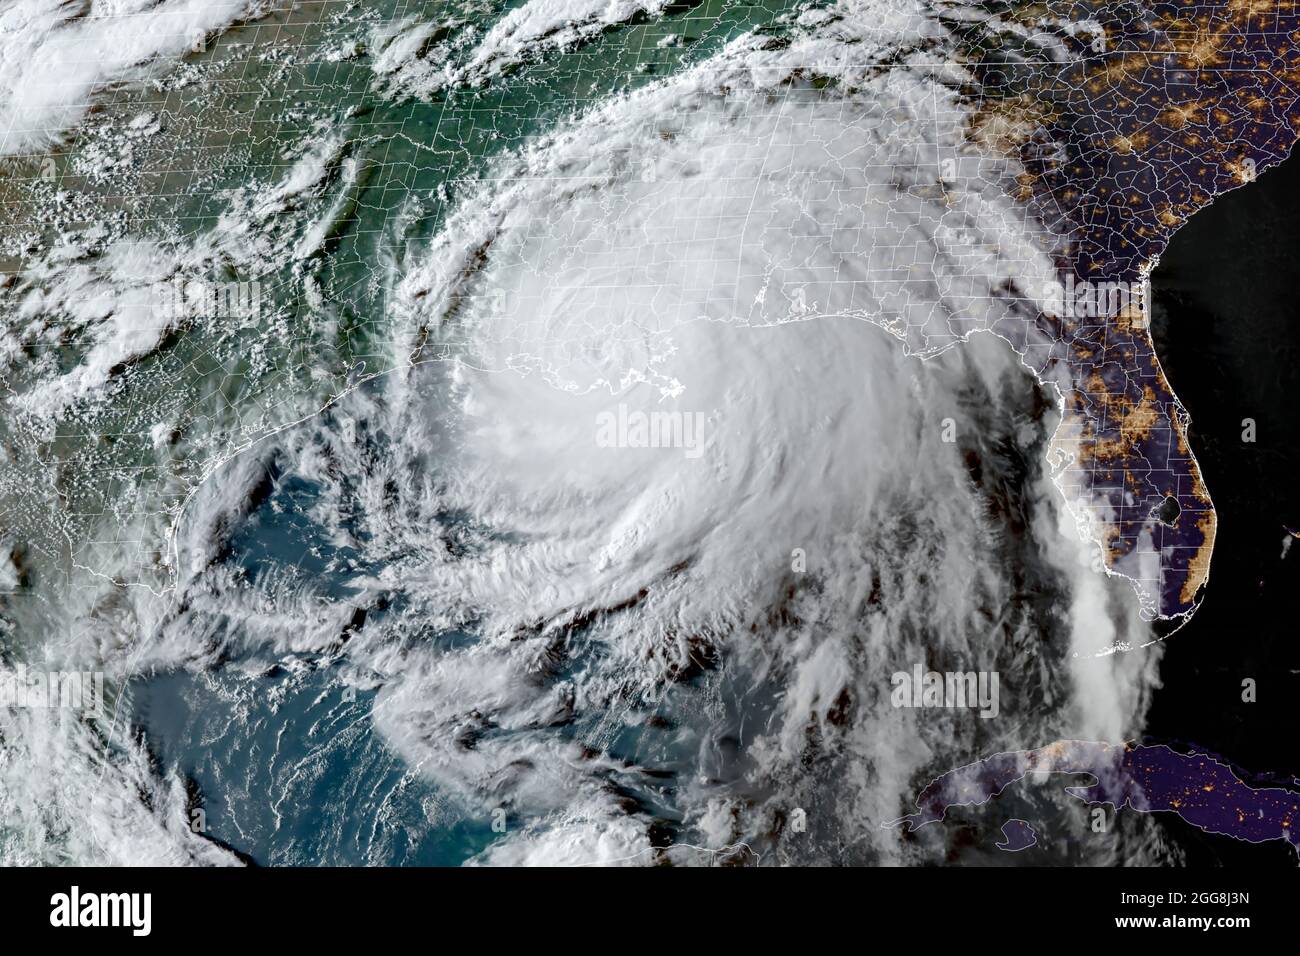 Vue de l'ouragan Ida depuis l'espace alors que la tempête catastrophique a frappé la région métropolitaine de la Nouvelle-Orléans dans le sud de la Louisiane, le dimanche 29 août 2021. (ÉTATS-UNIS) Banque D'Images